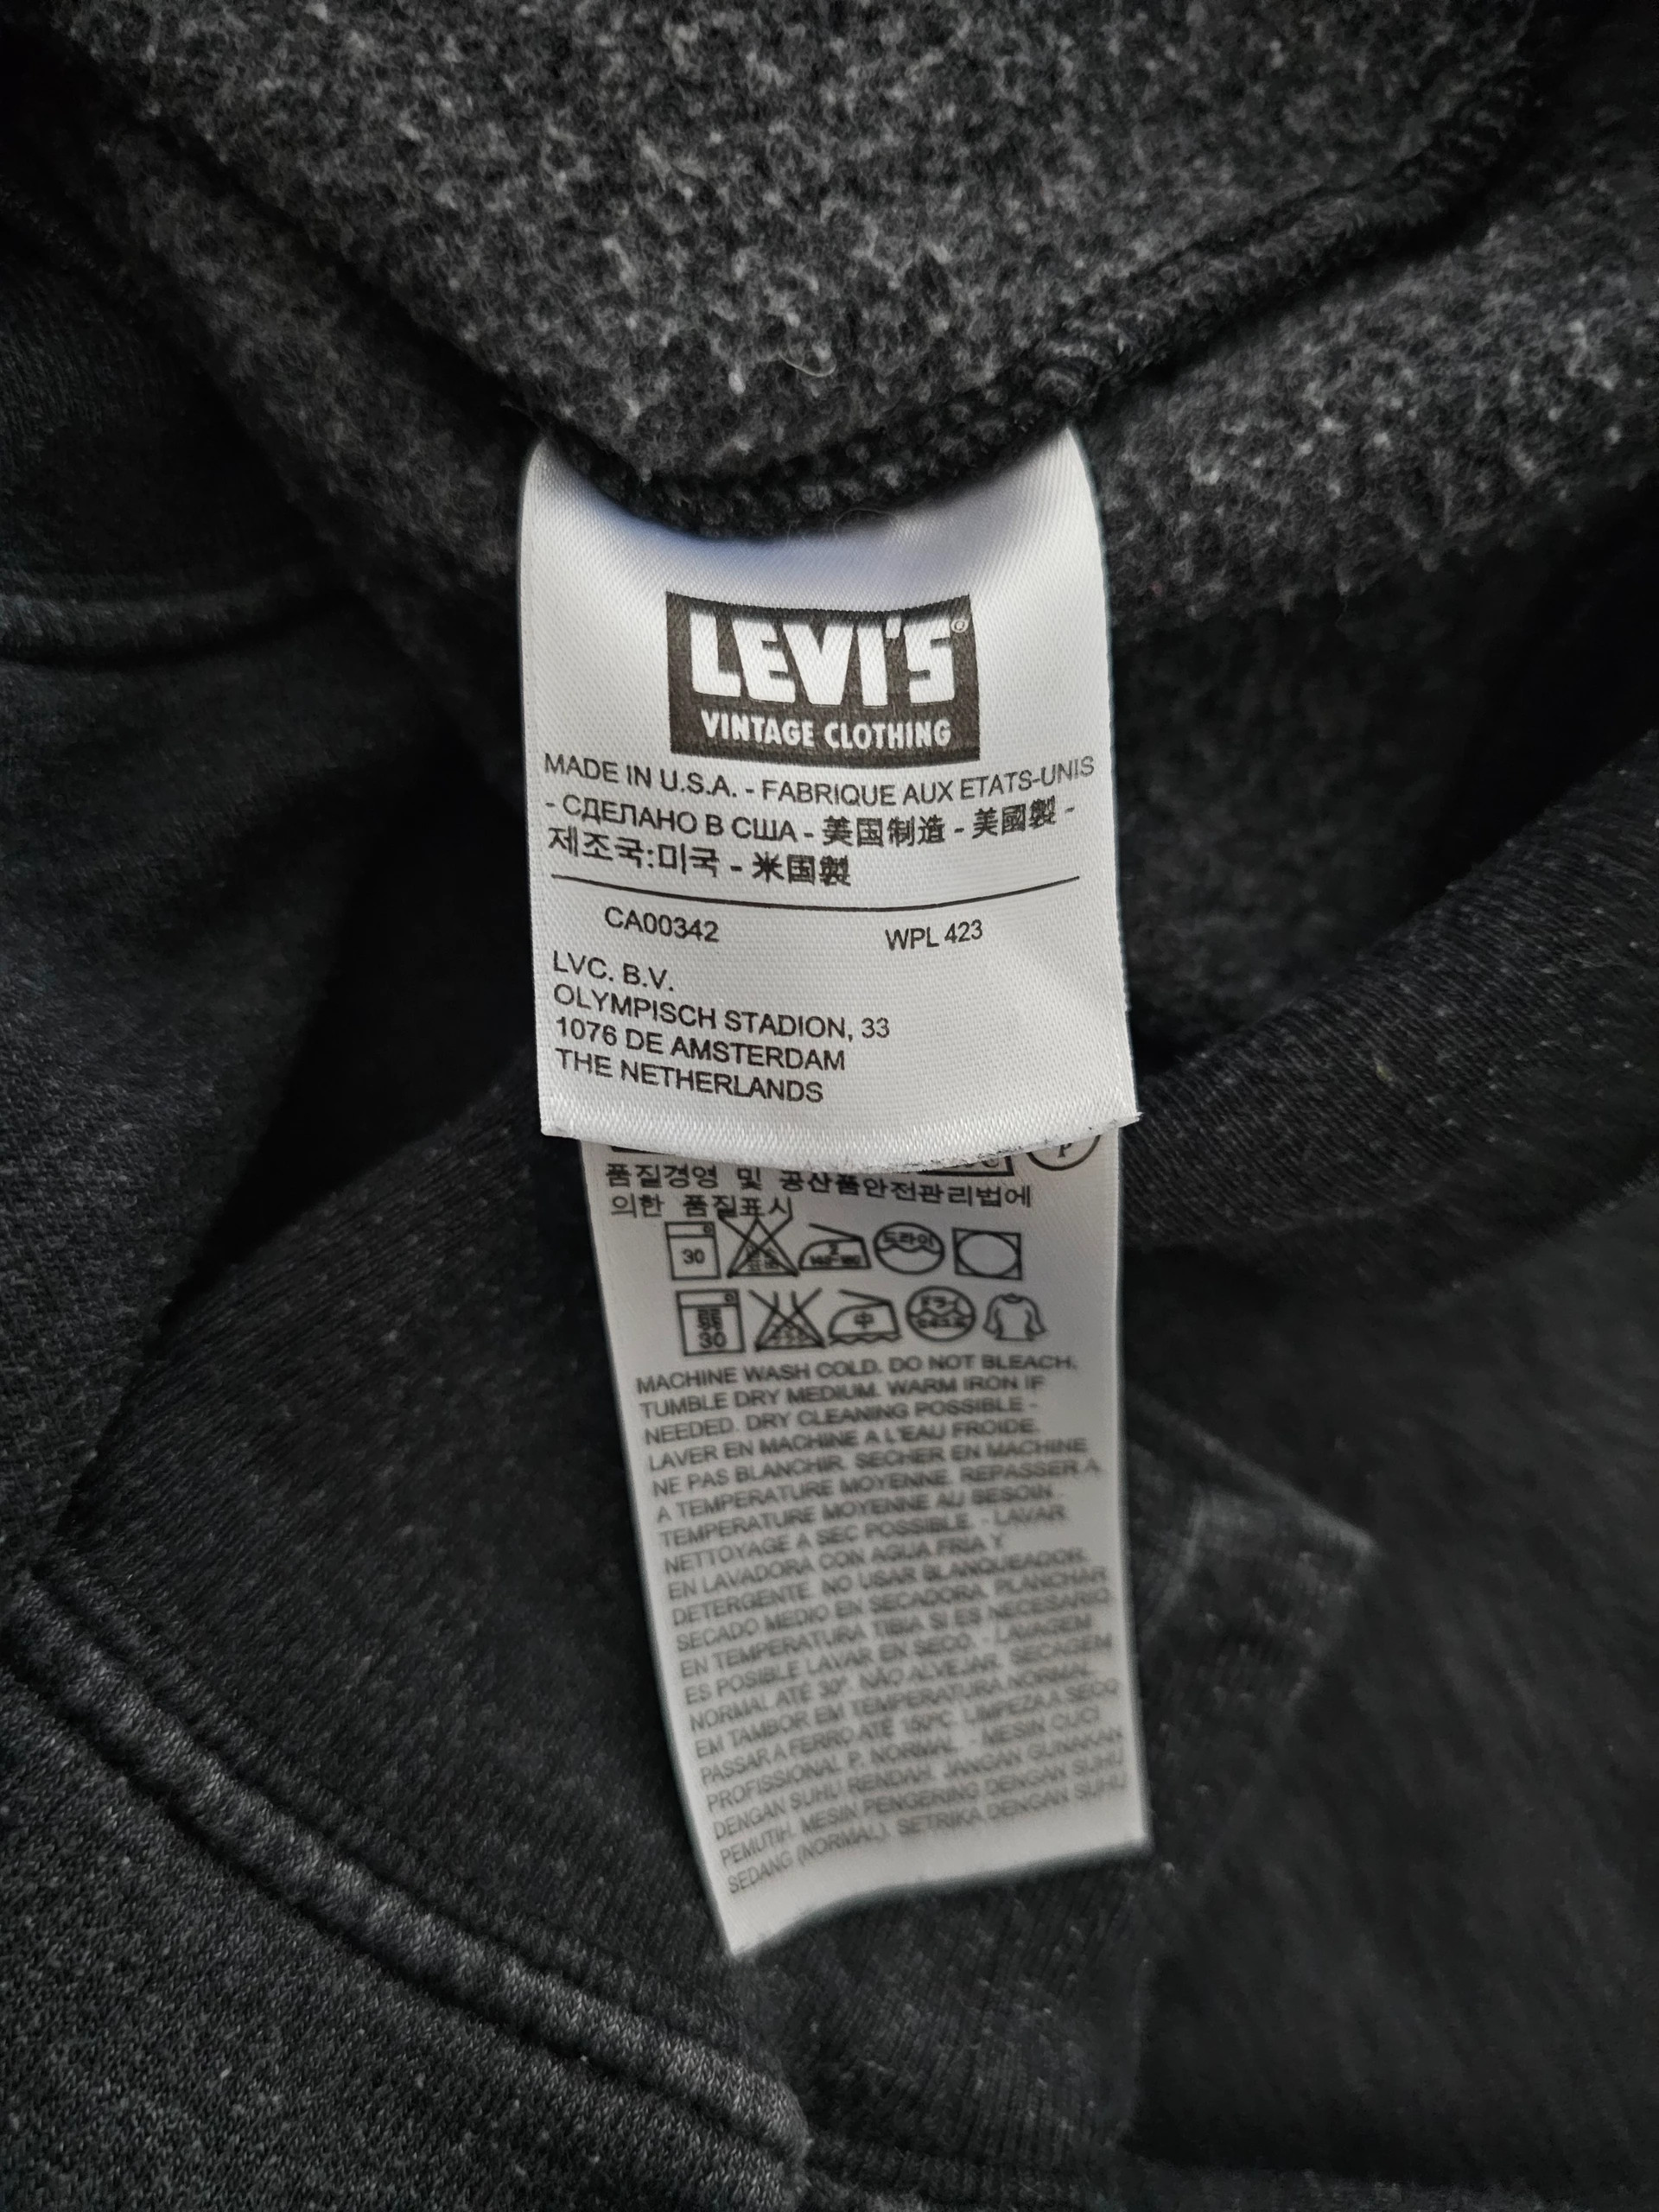 Lvc levis vintage clothing - Gem